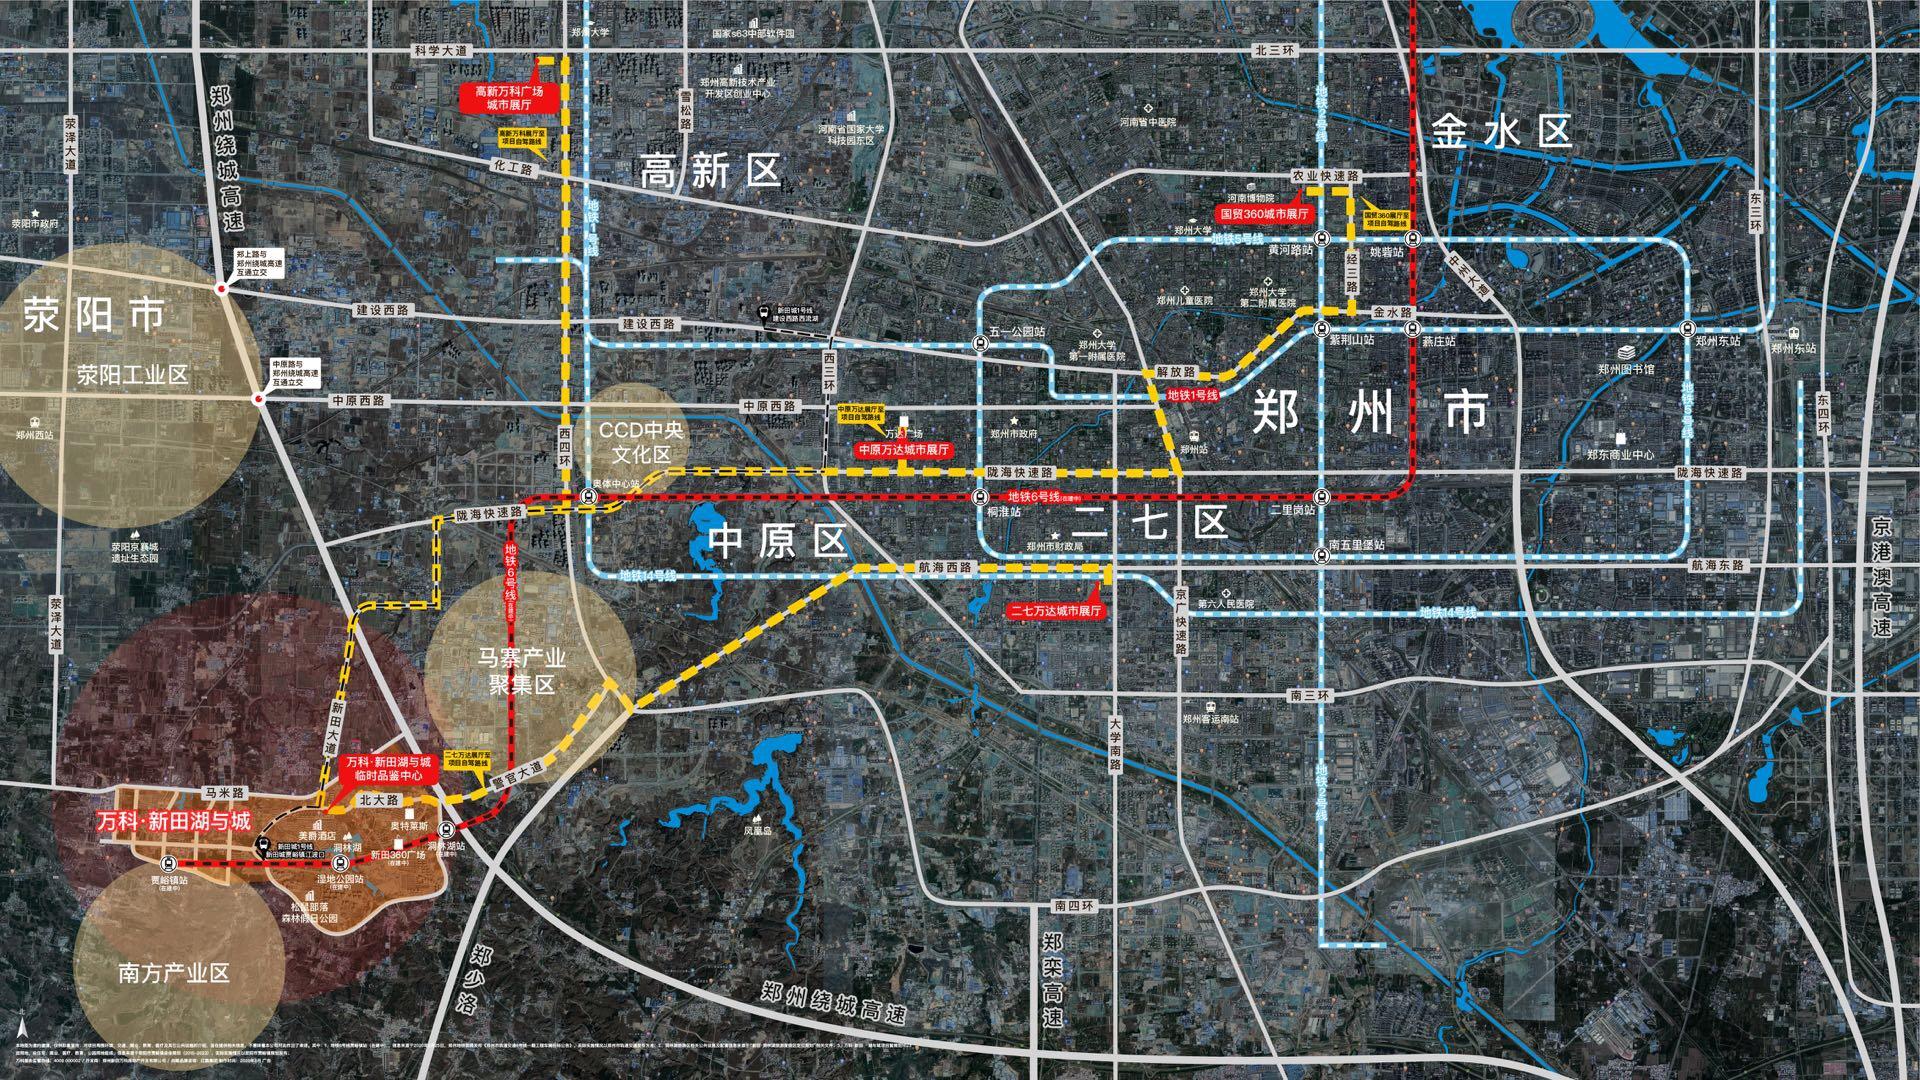 荥阳贾峪镇道路规划图片